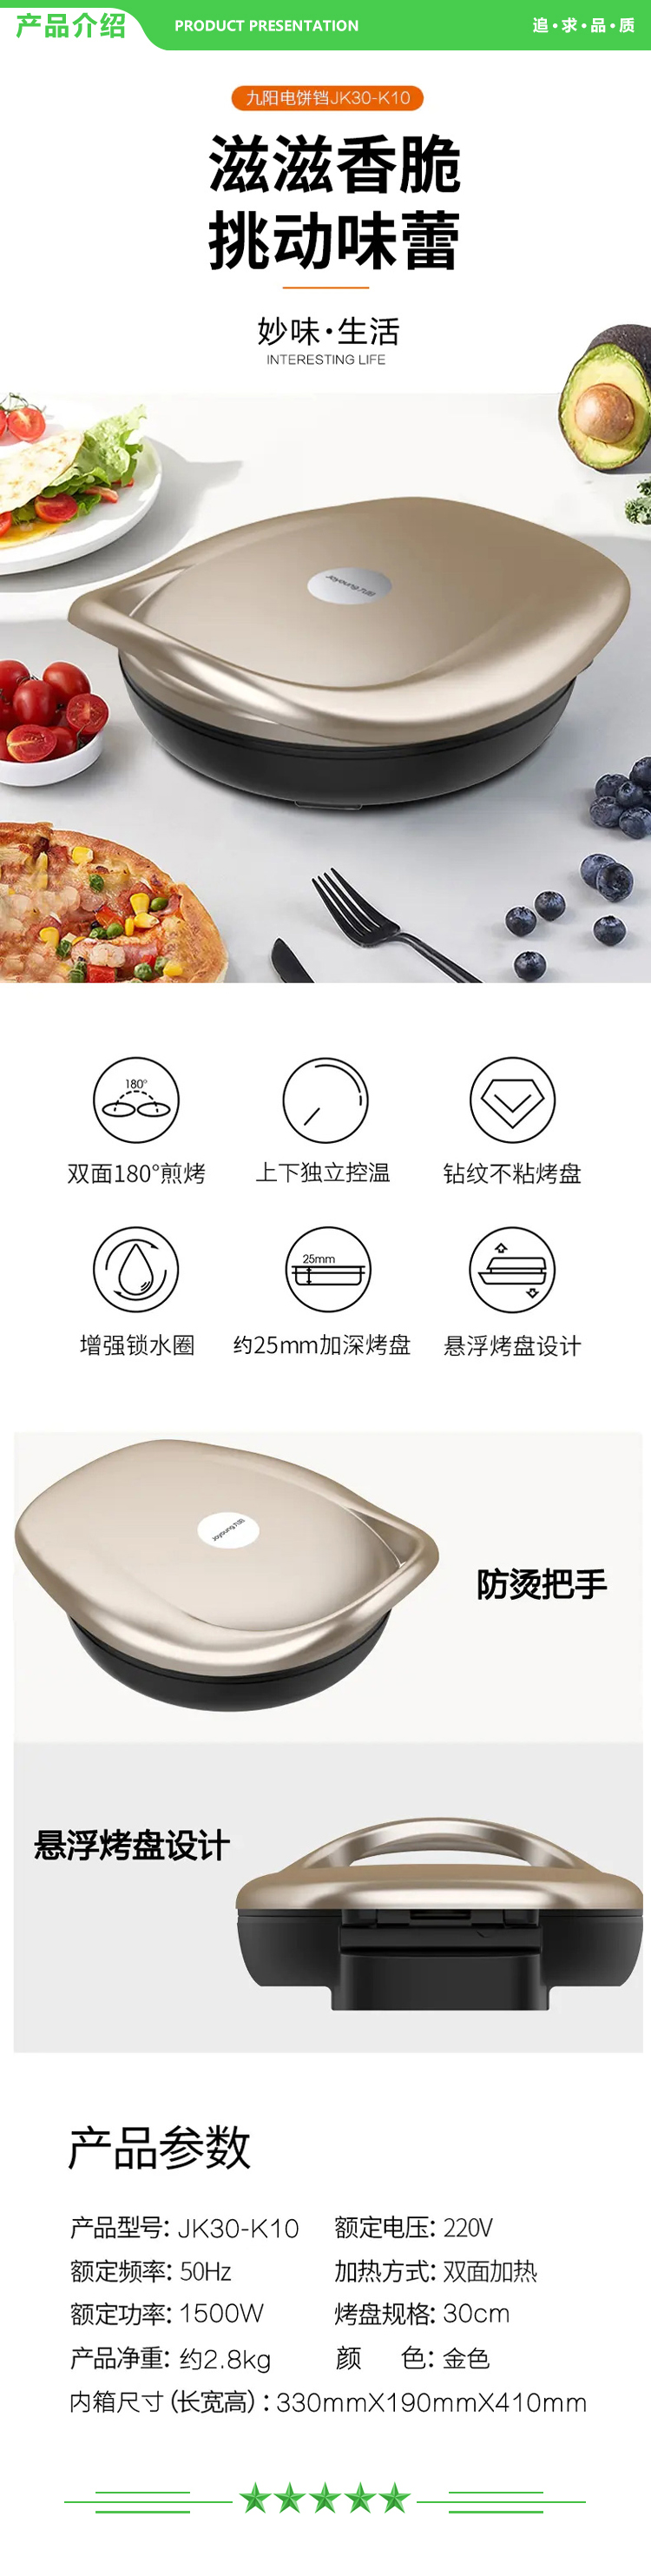 九阳 Joyoung JK30-K10 电饼铛 多功能家用煎烤机双面悬浮烙饼机 金色.jpg